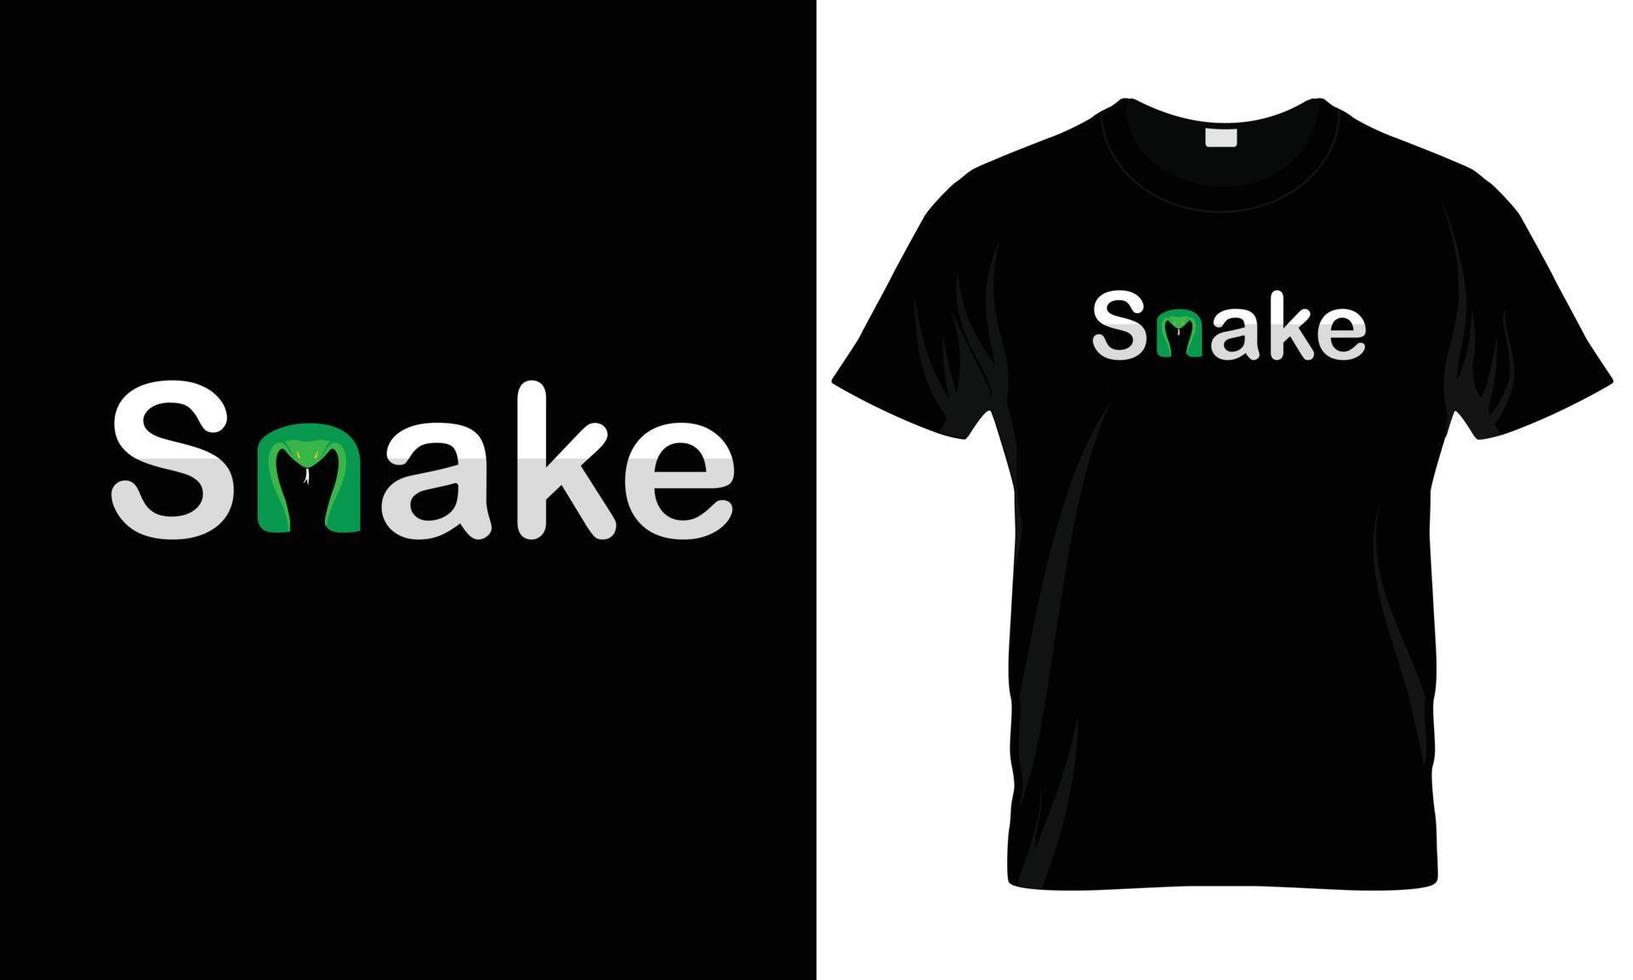 Schlangen-T-Shirt-Design. Druck für Kleidung, Poster, Vektor. vektor